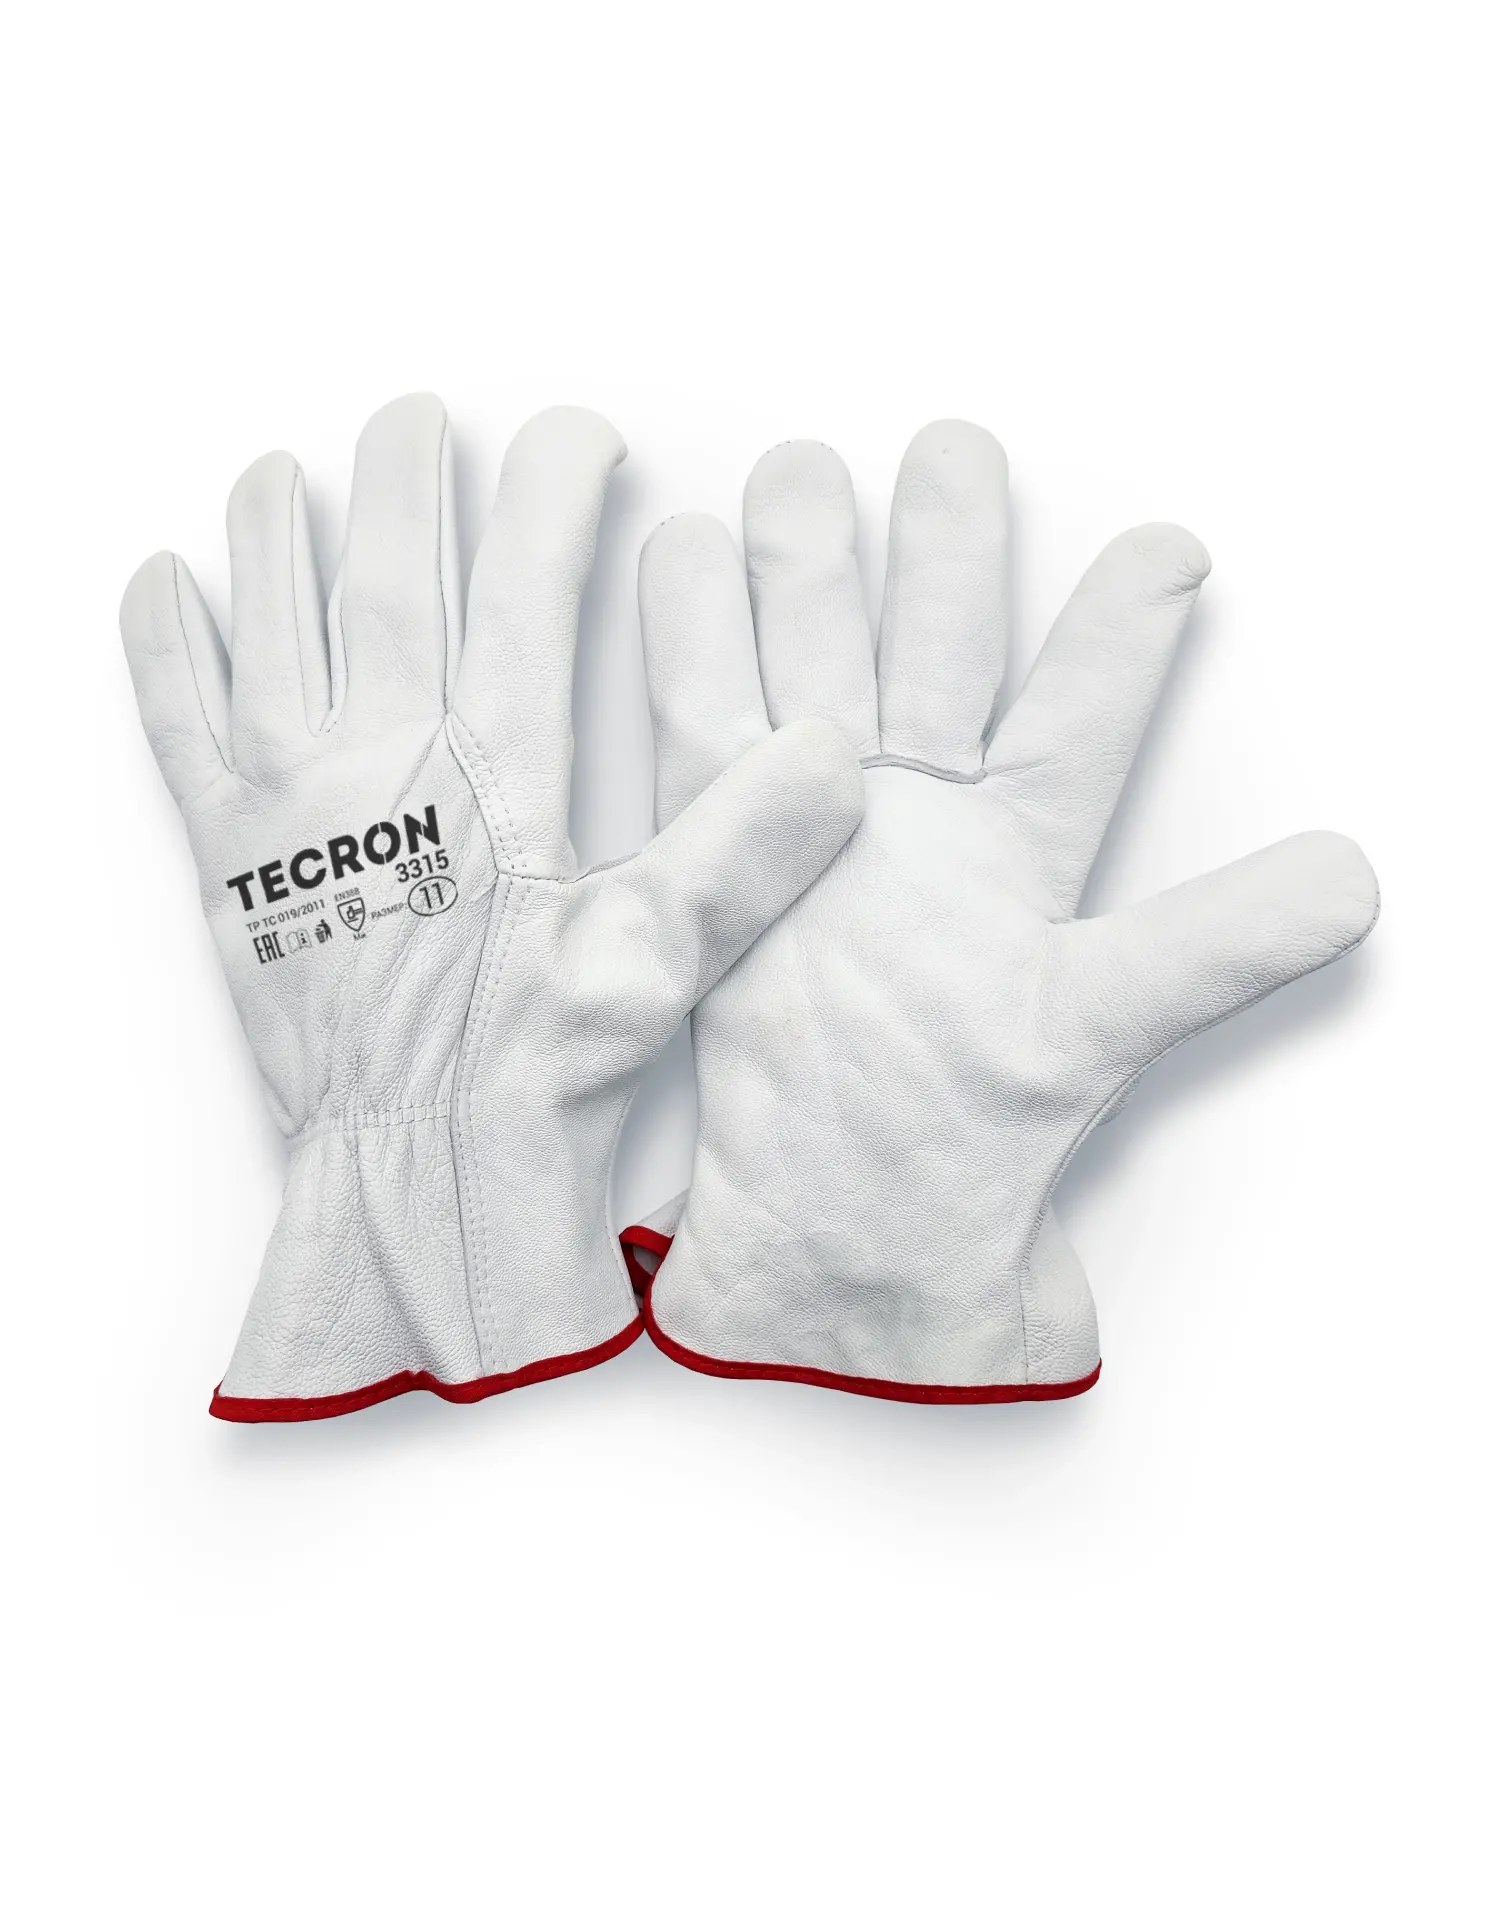 TECRON™ 3315 leather gloves